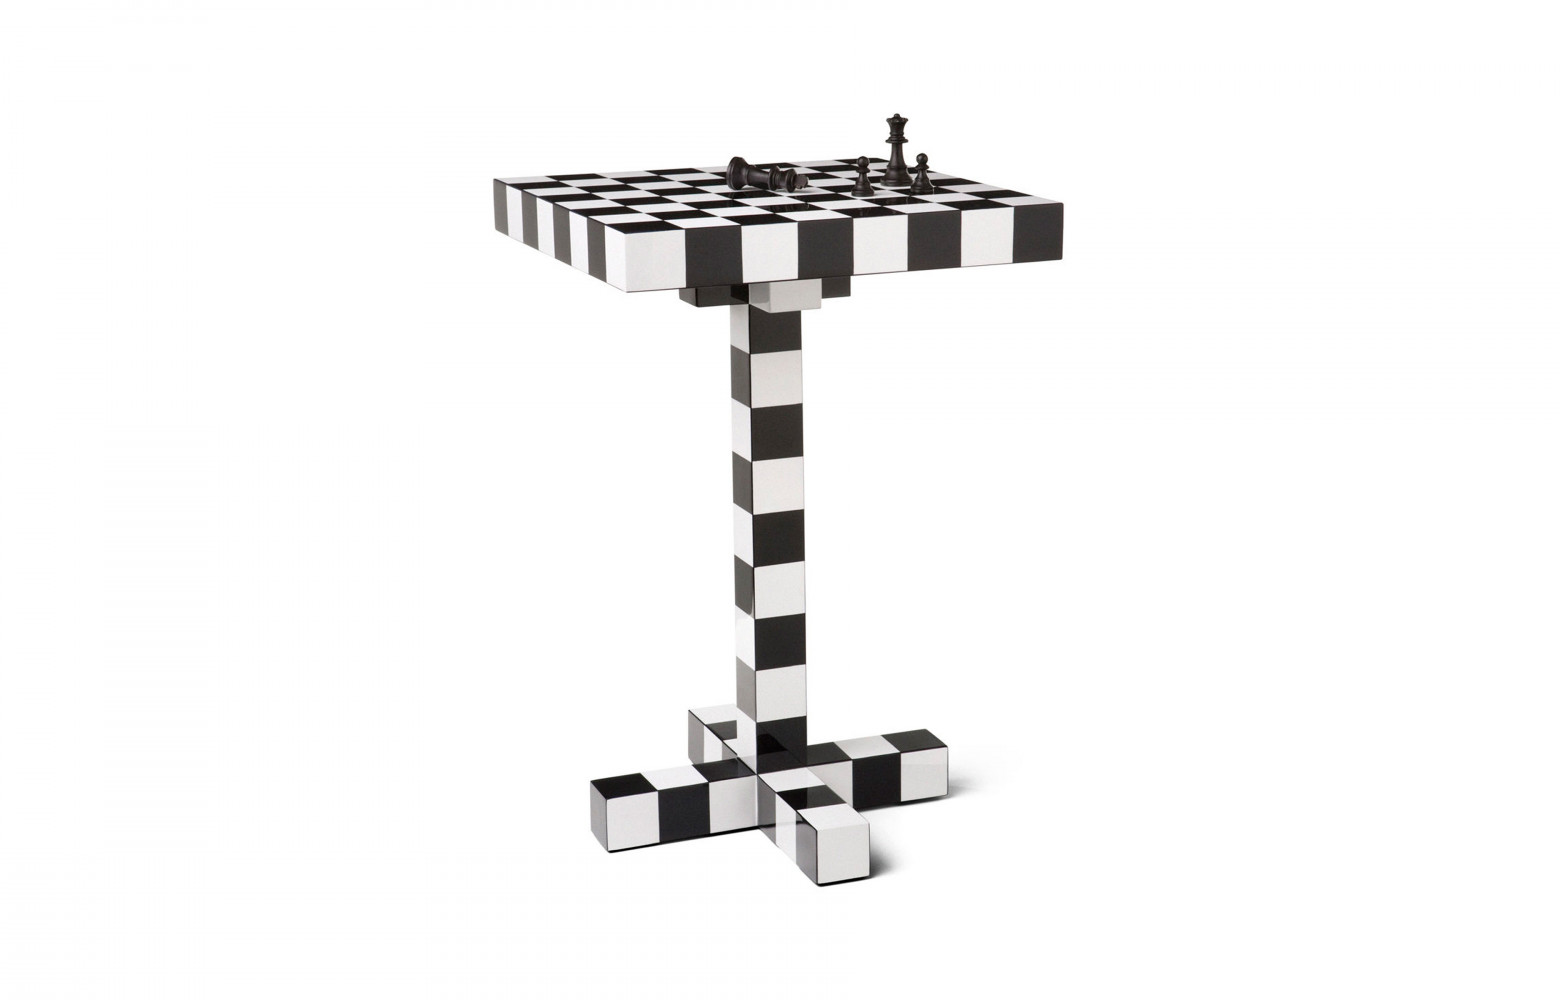 Guéridon « Chess Table » en bois laqué, design Front. Moooi.